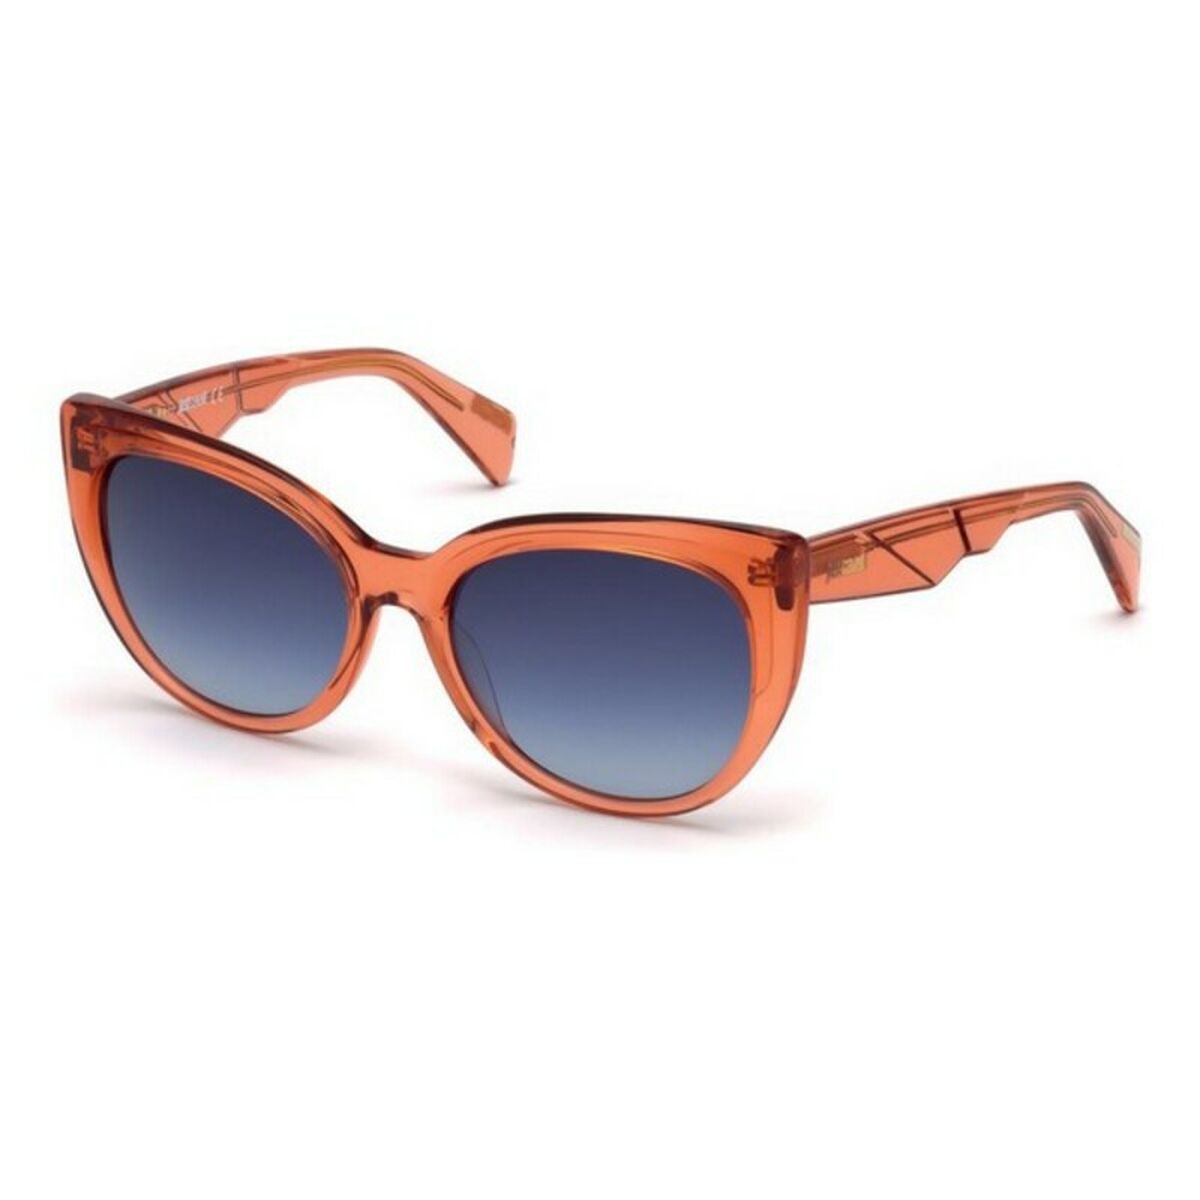 Ladies' Sunglasses Just Cavalli JC836S